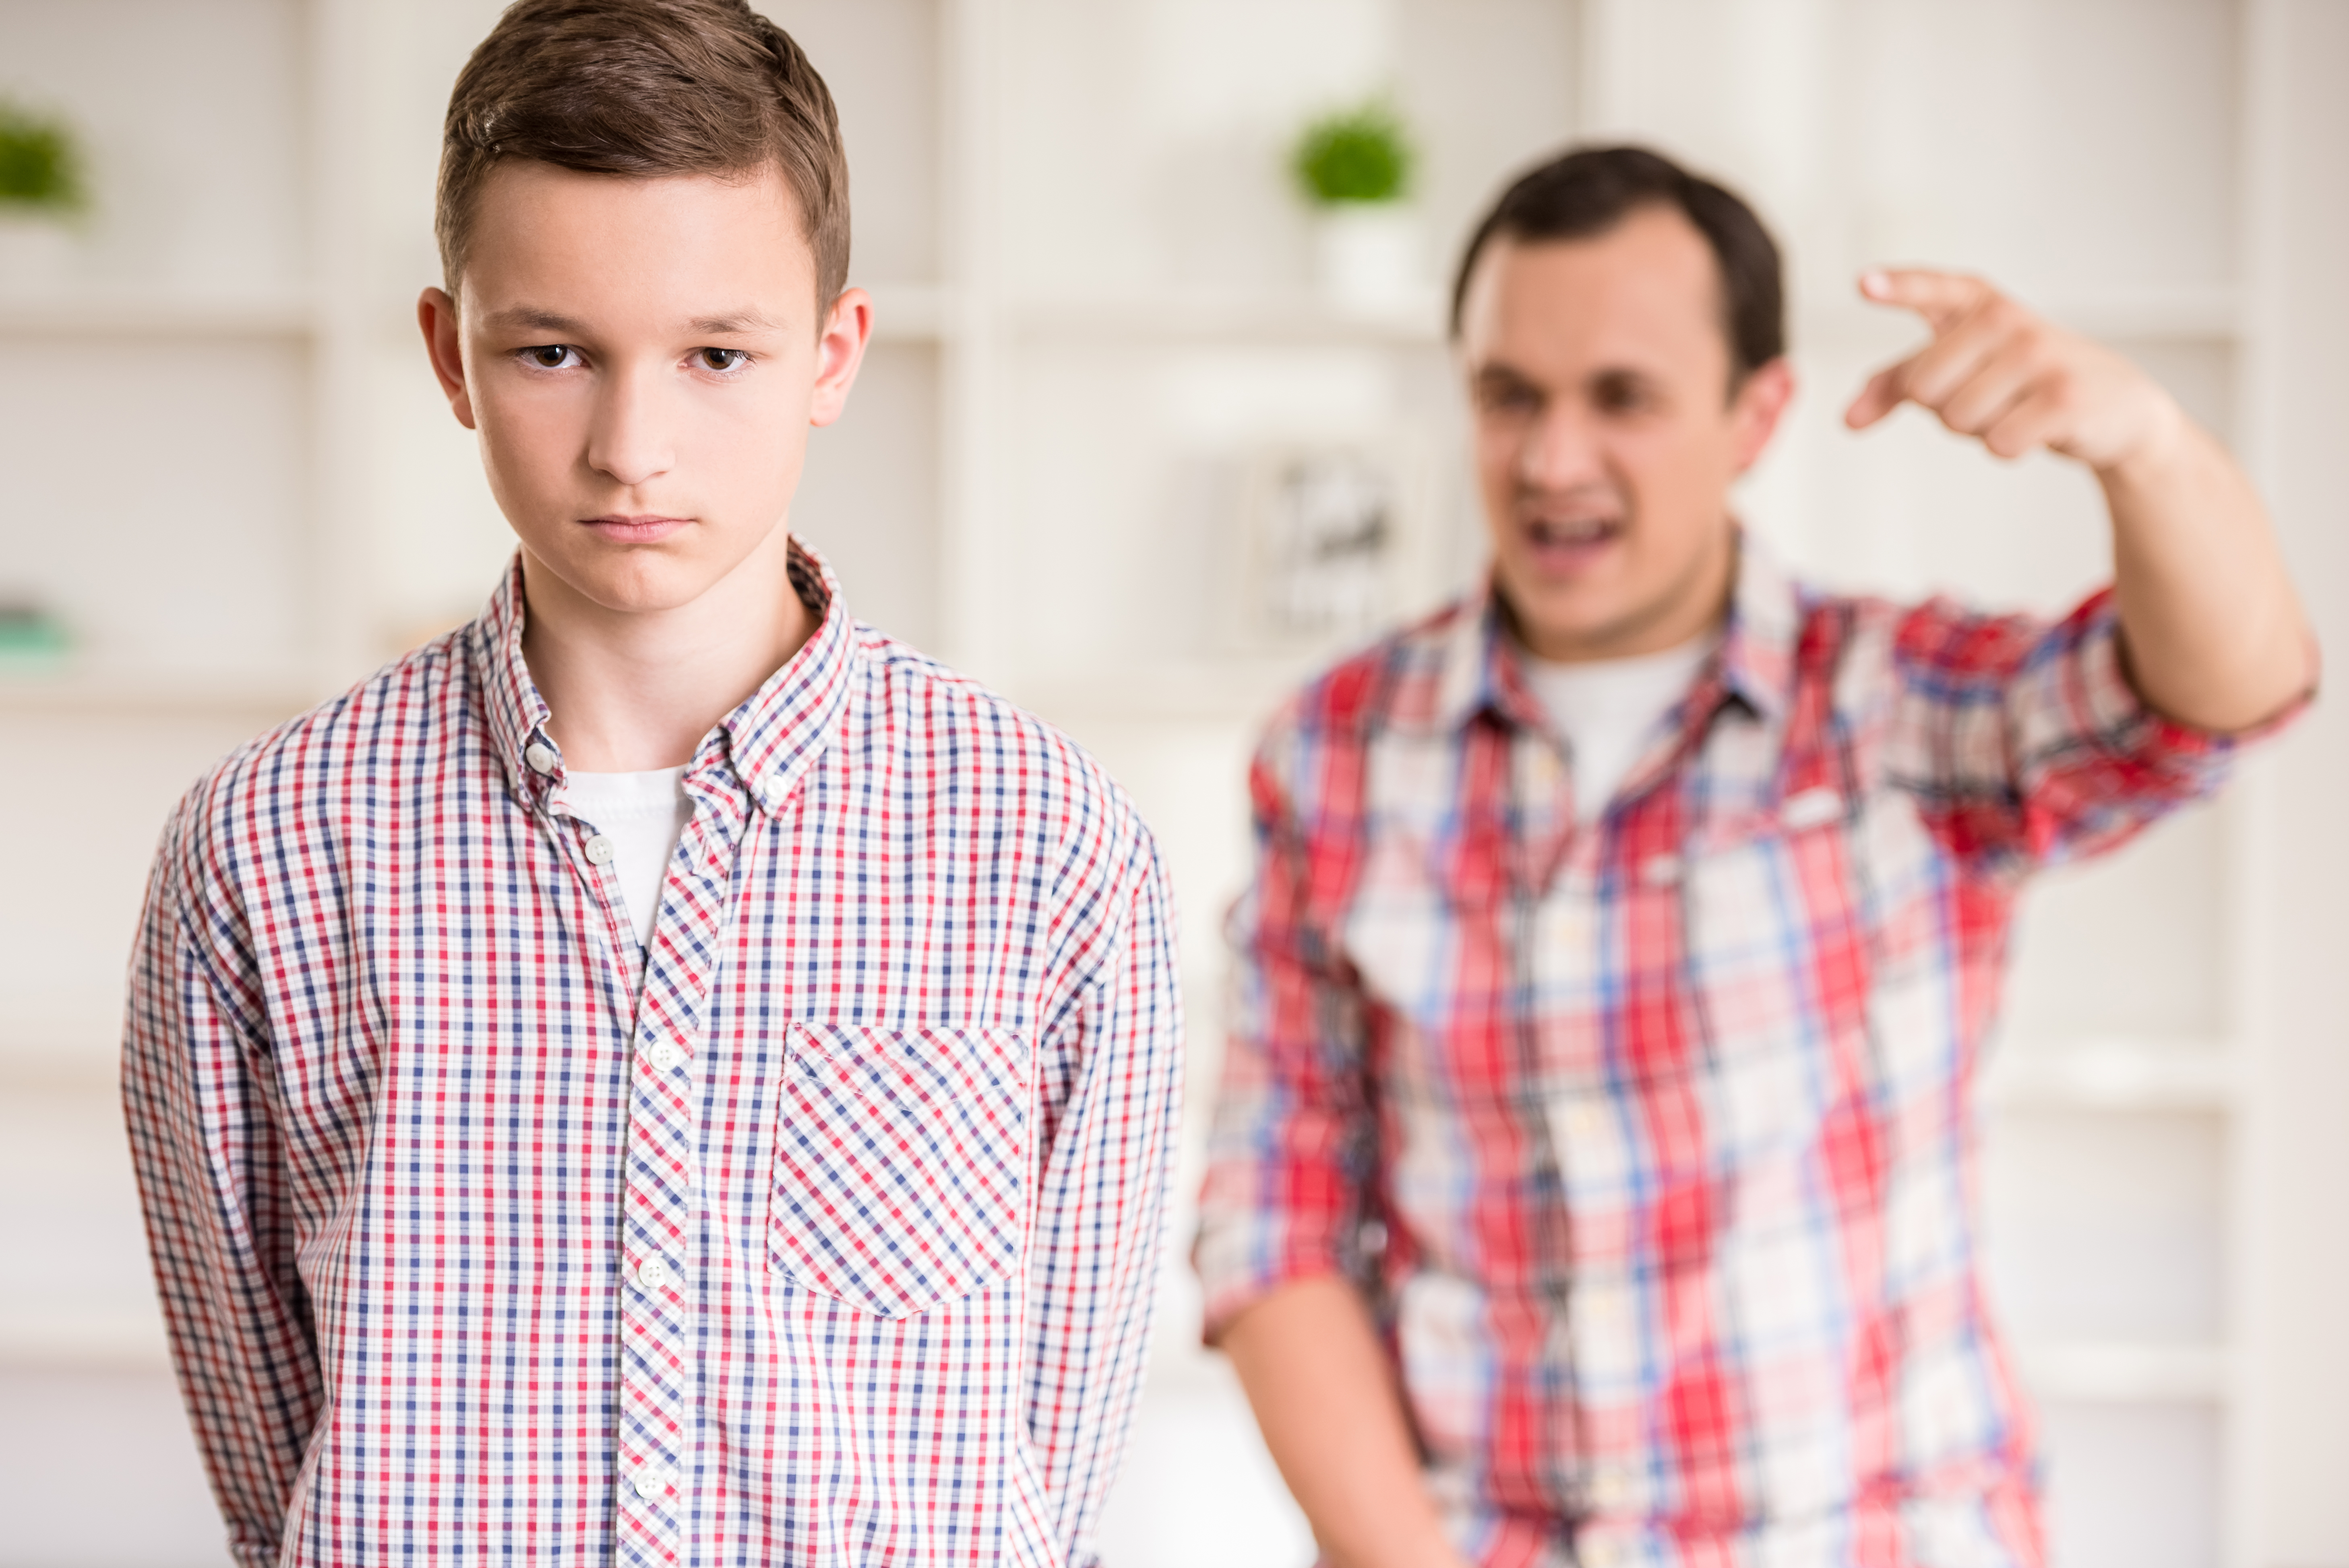 Ein kleiner Junge wird von seinem Vater ausgeschimpft | Quelle: Shutterstock